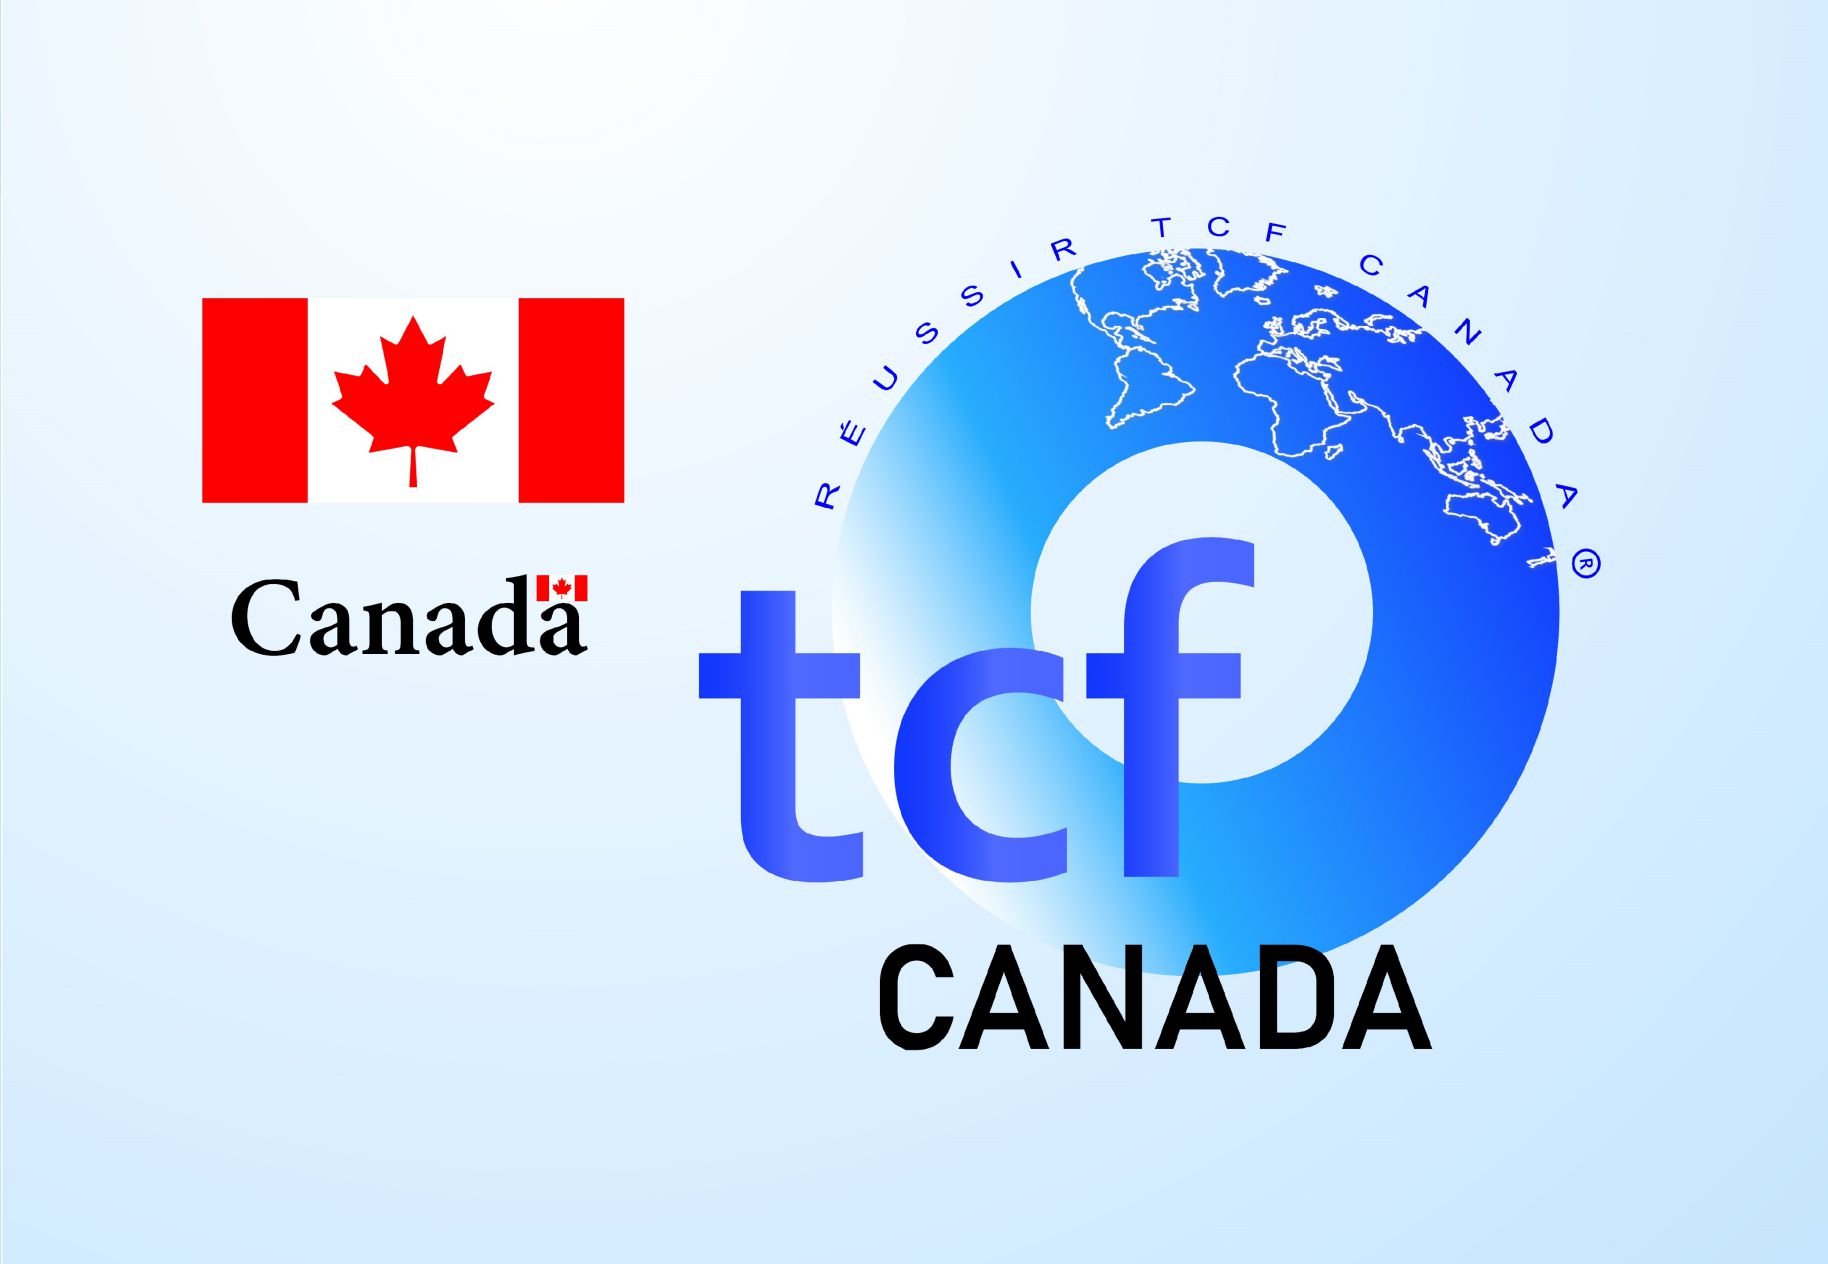 réussir tcf Canada background logo